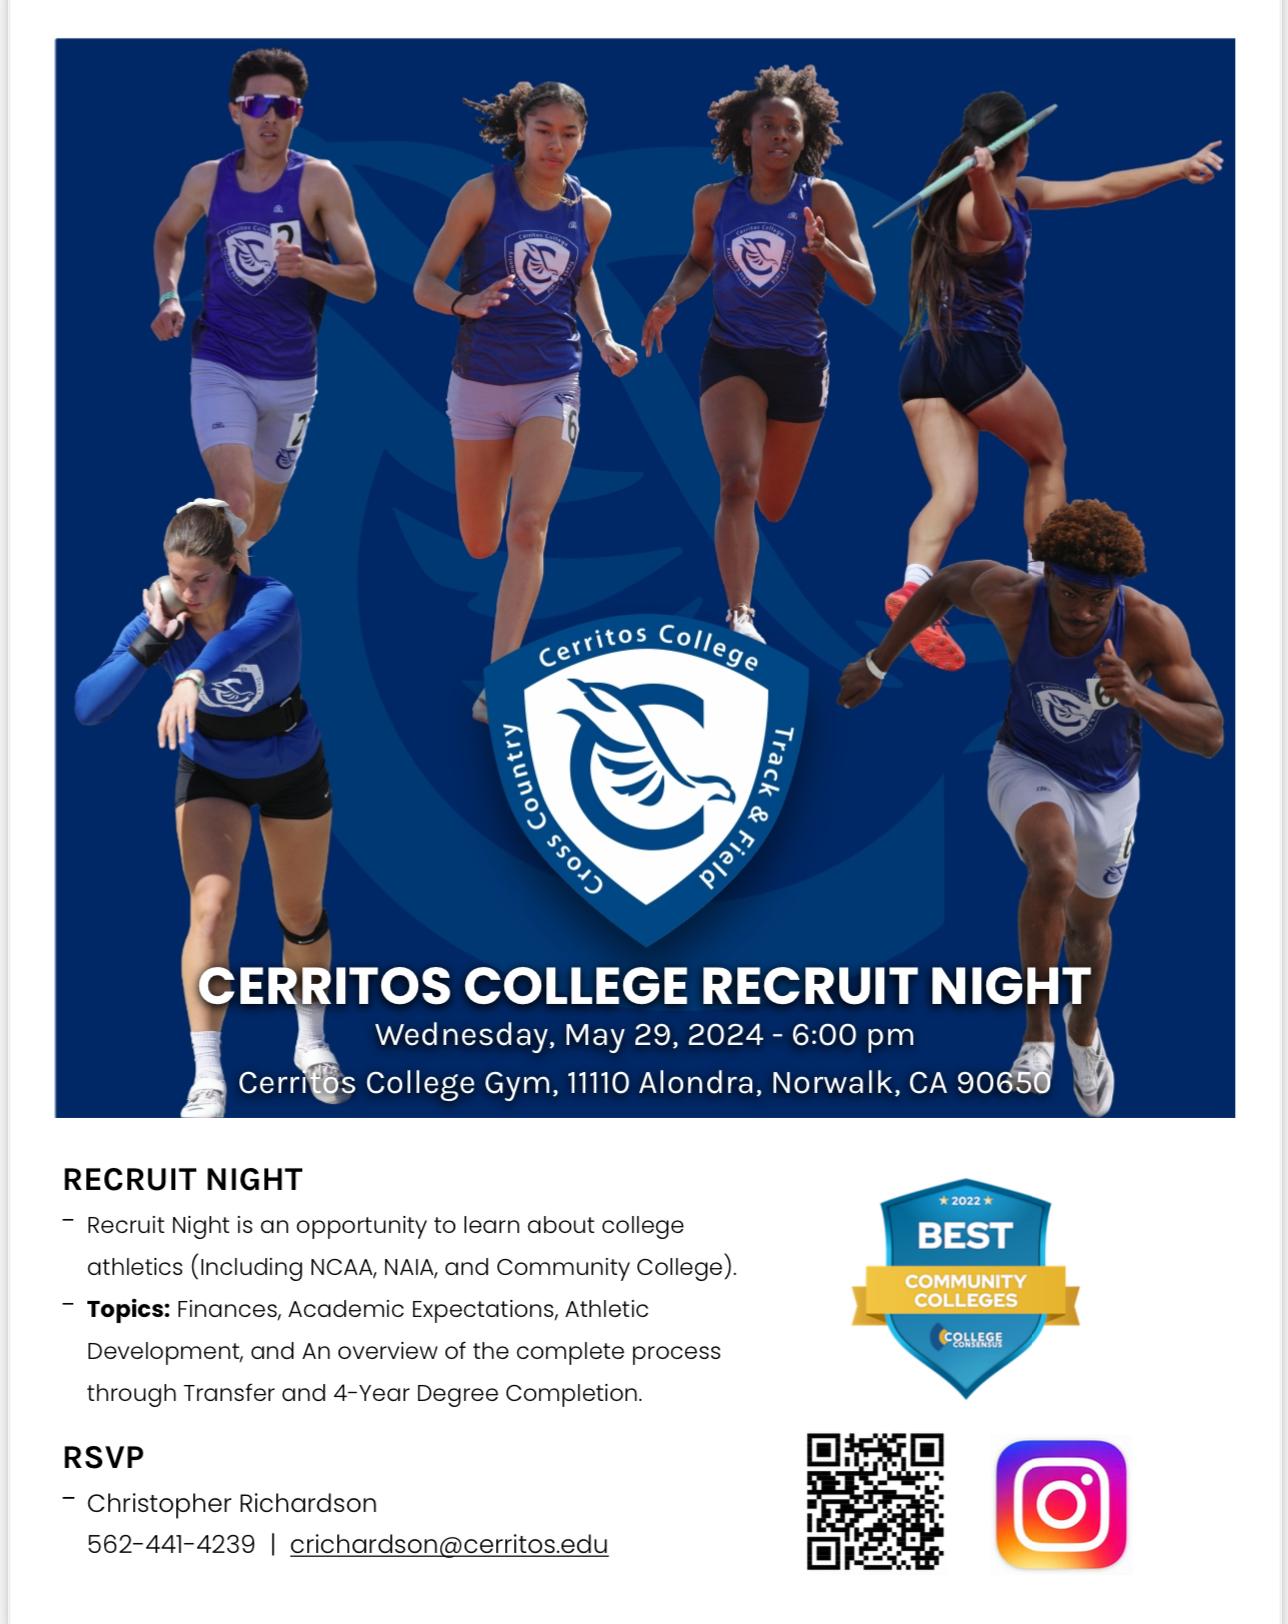 Cerritos College to host Recruit Night